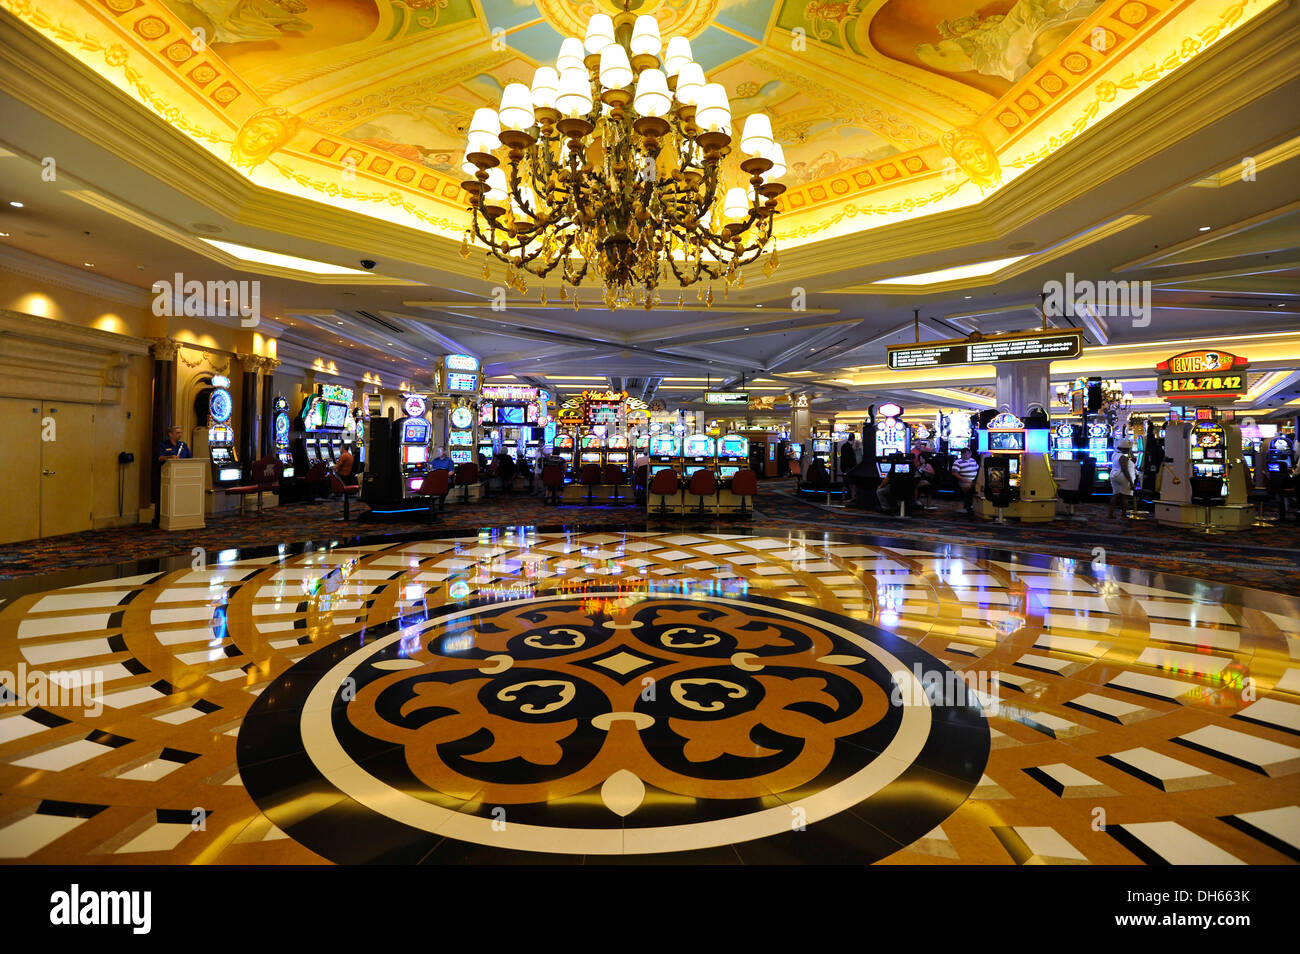 Vegas Star Casino